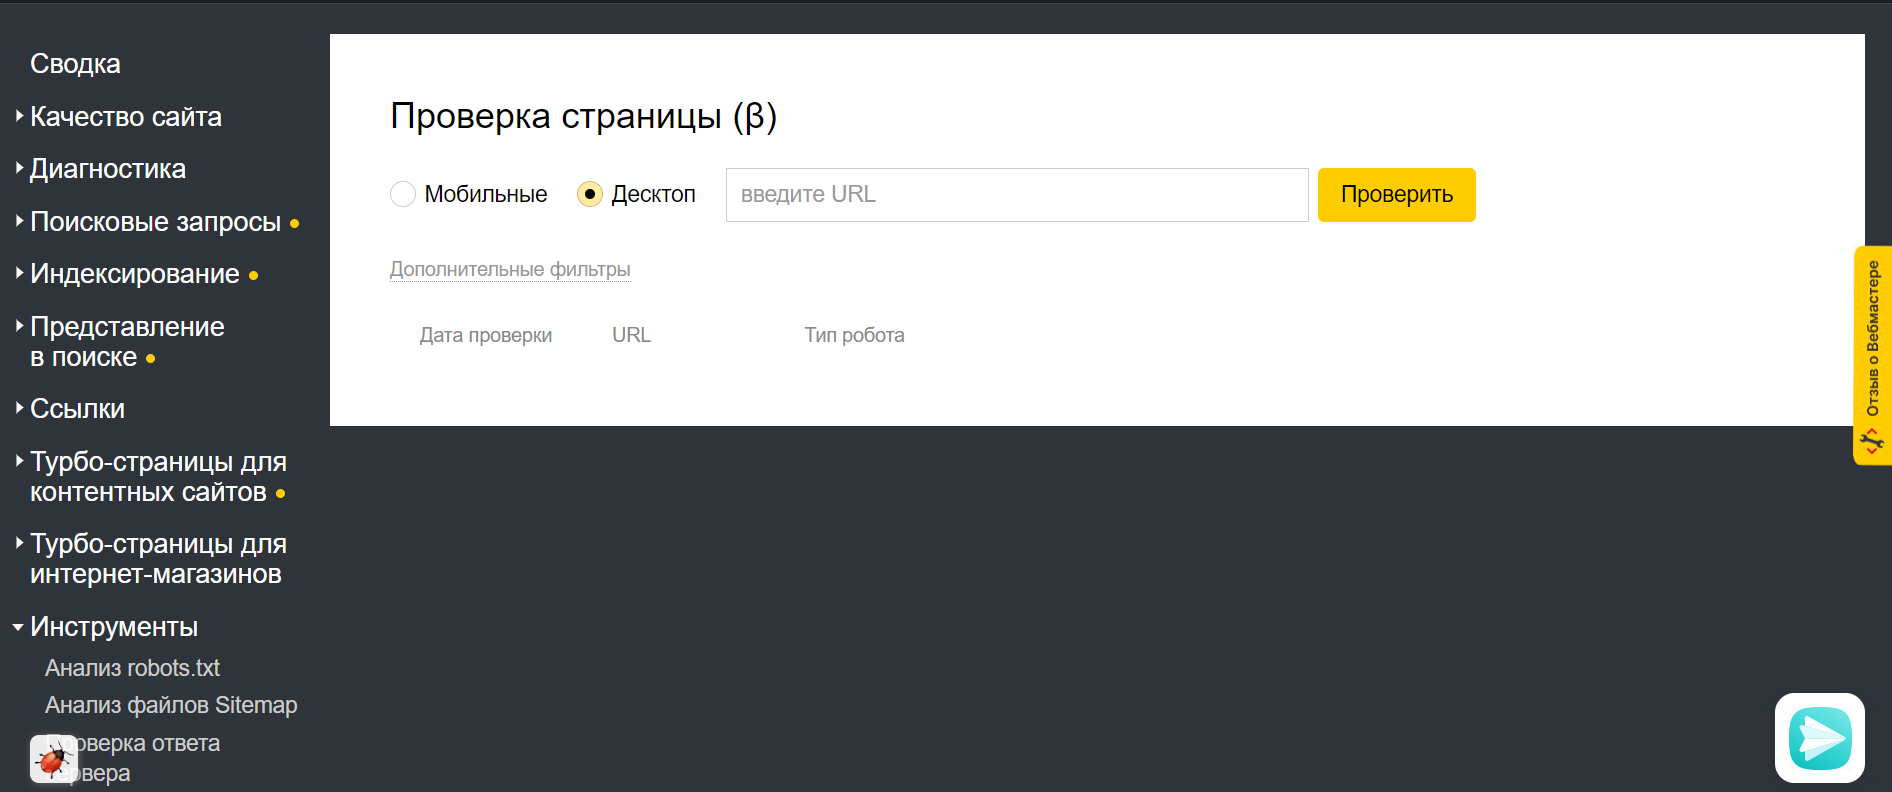 Яндекс запустил 2 новых инструмента в Вебмастере: «Проверка страницы» и «Рендеринг страниц JavaScript»